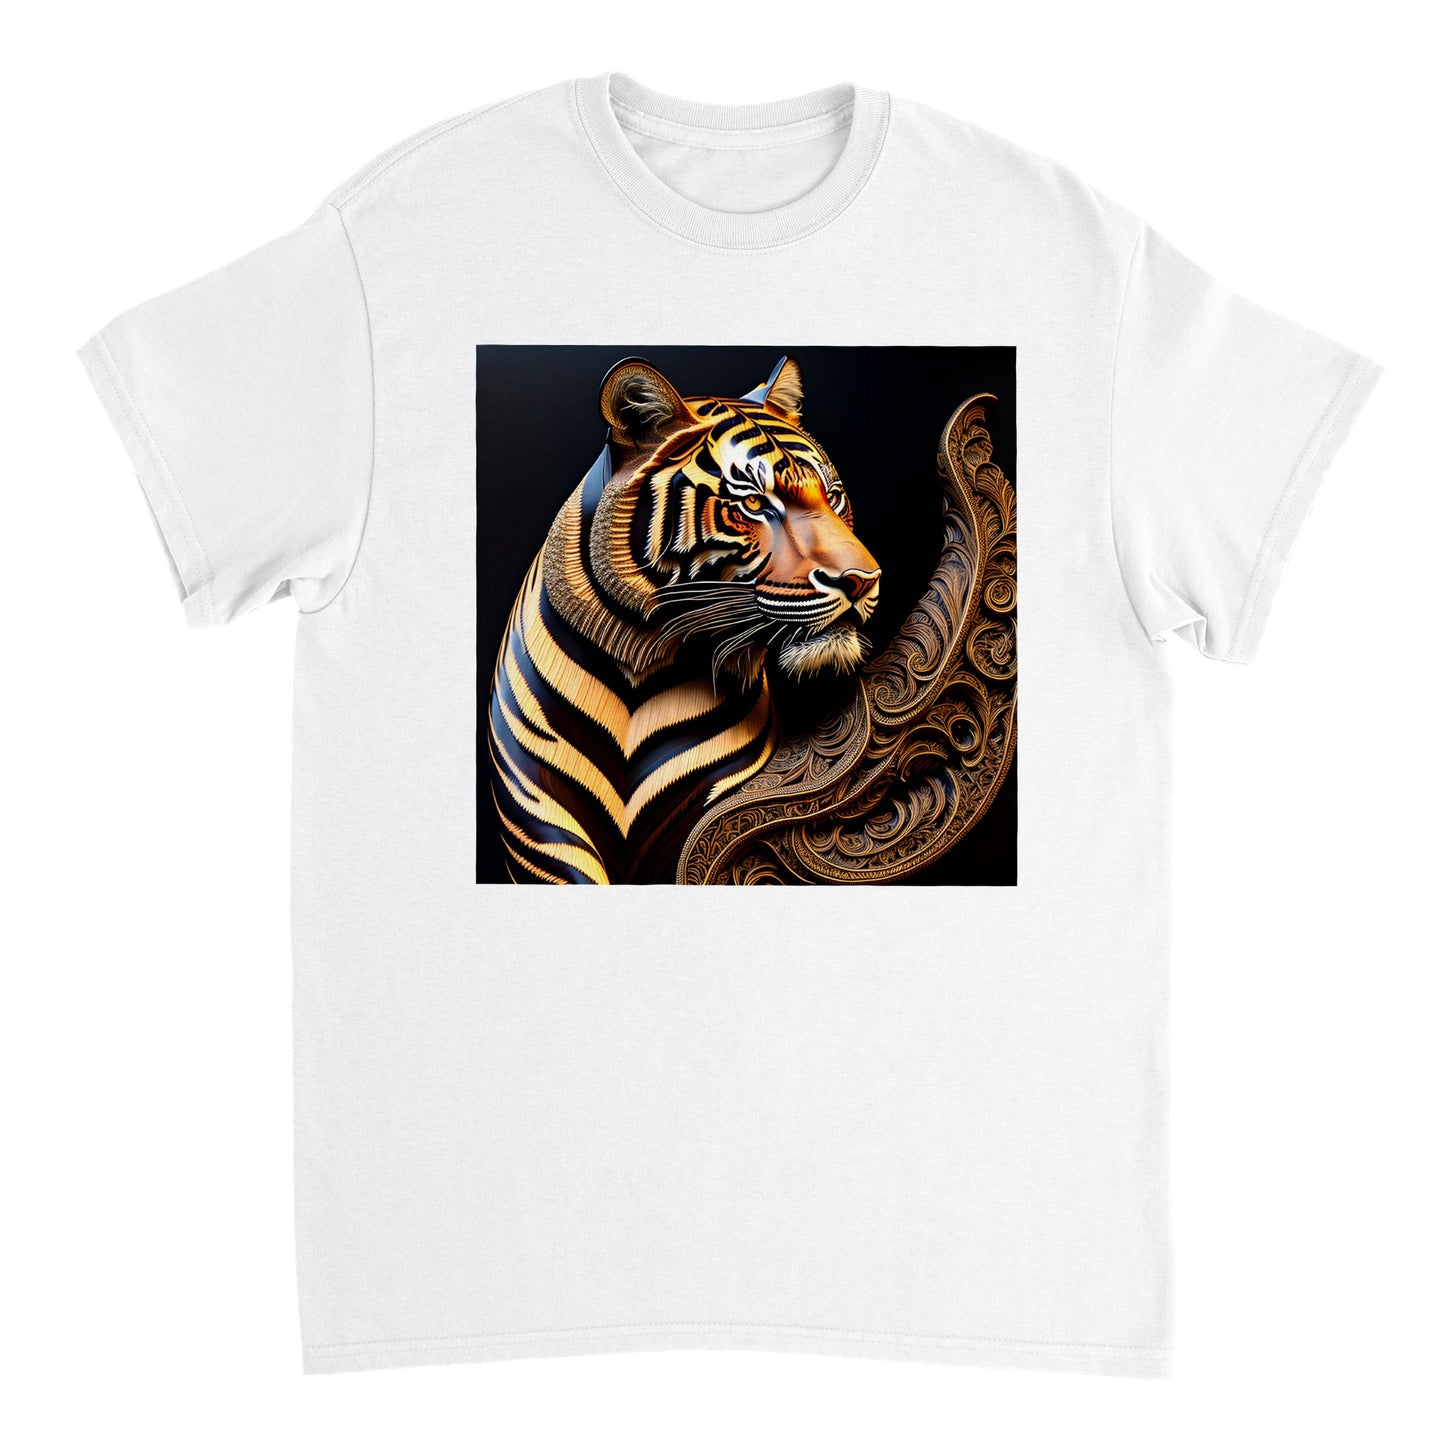 3D Wooden Animal Art - Heavyweight Unisex Crewneck T-shirt 82